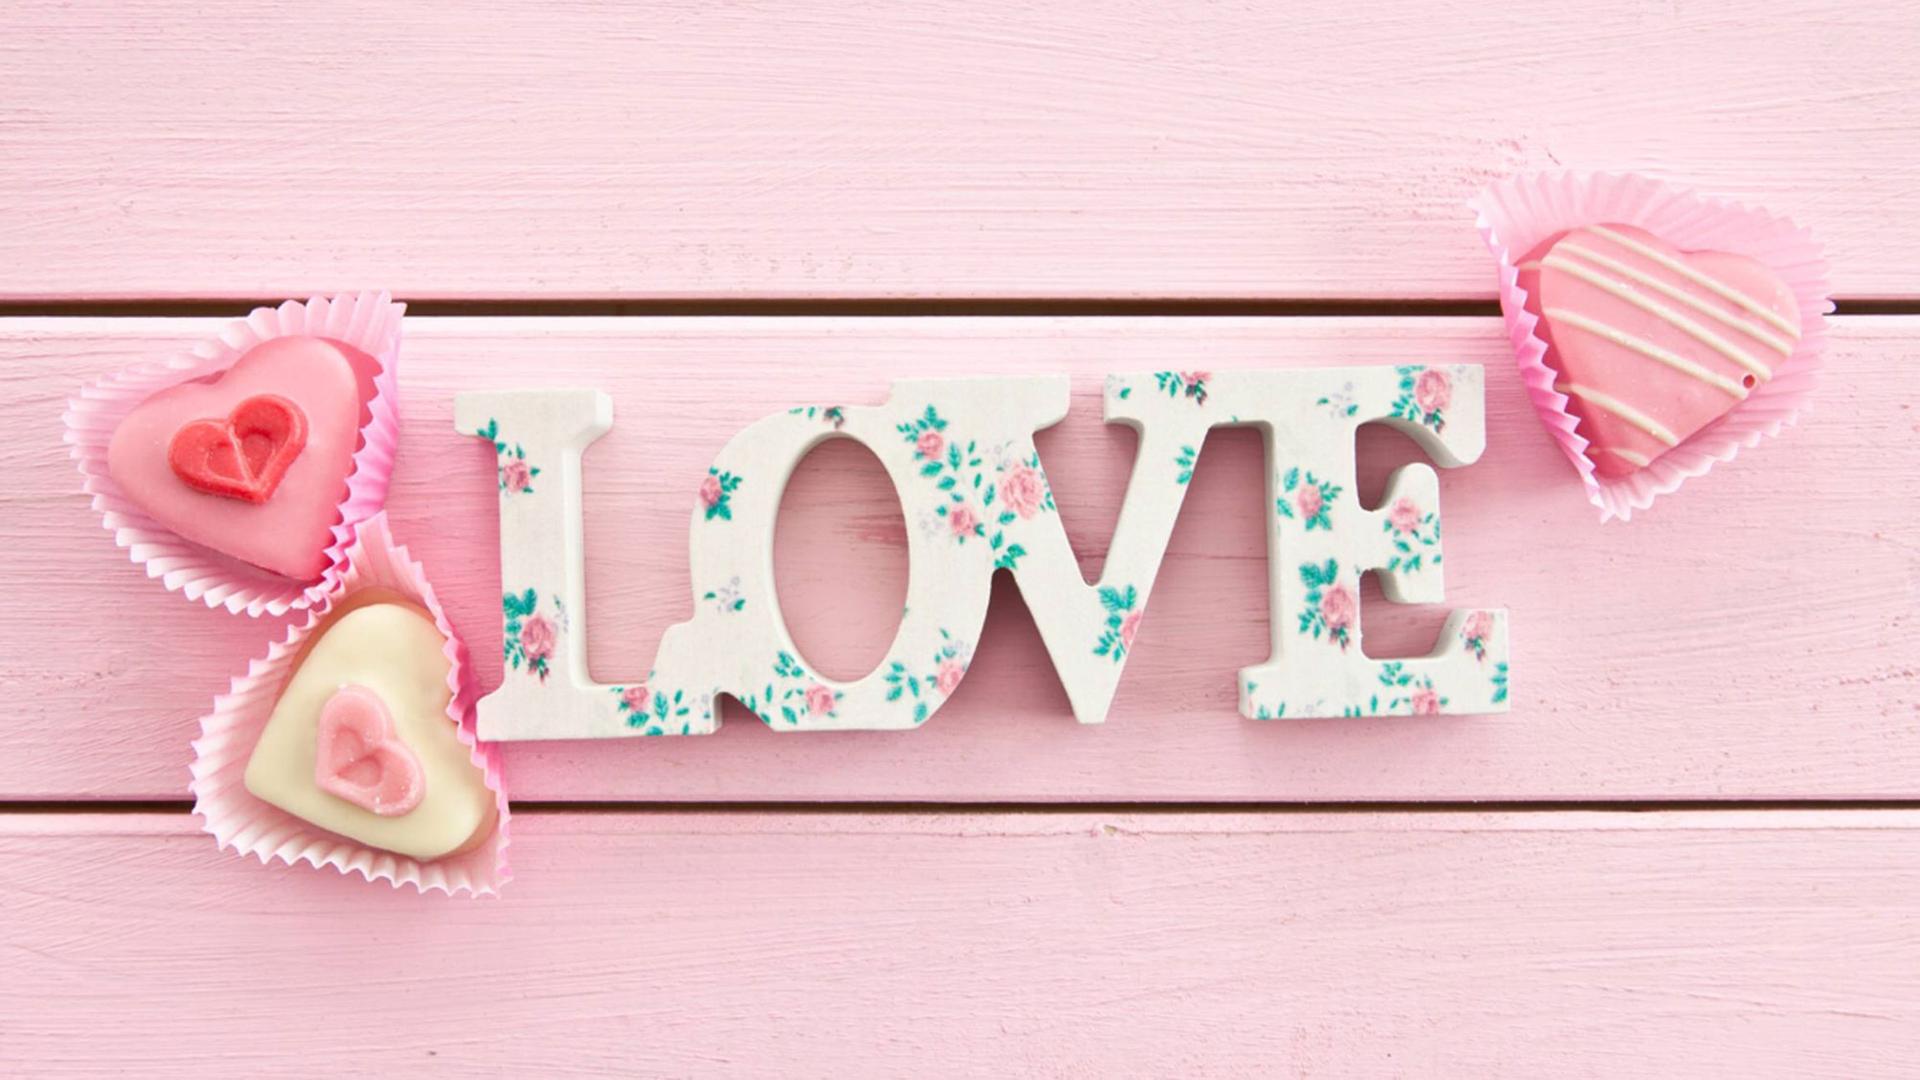 Der Schriftzug "Liebe" liegt auf rosa gestrichenem Holz, daneben drei rosafarbene Törtchen in Herzform.